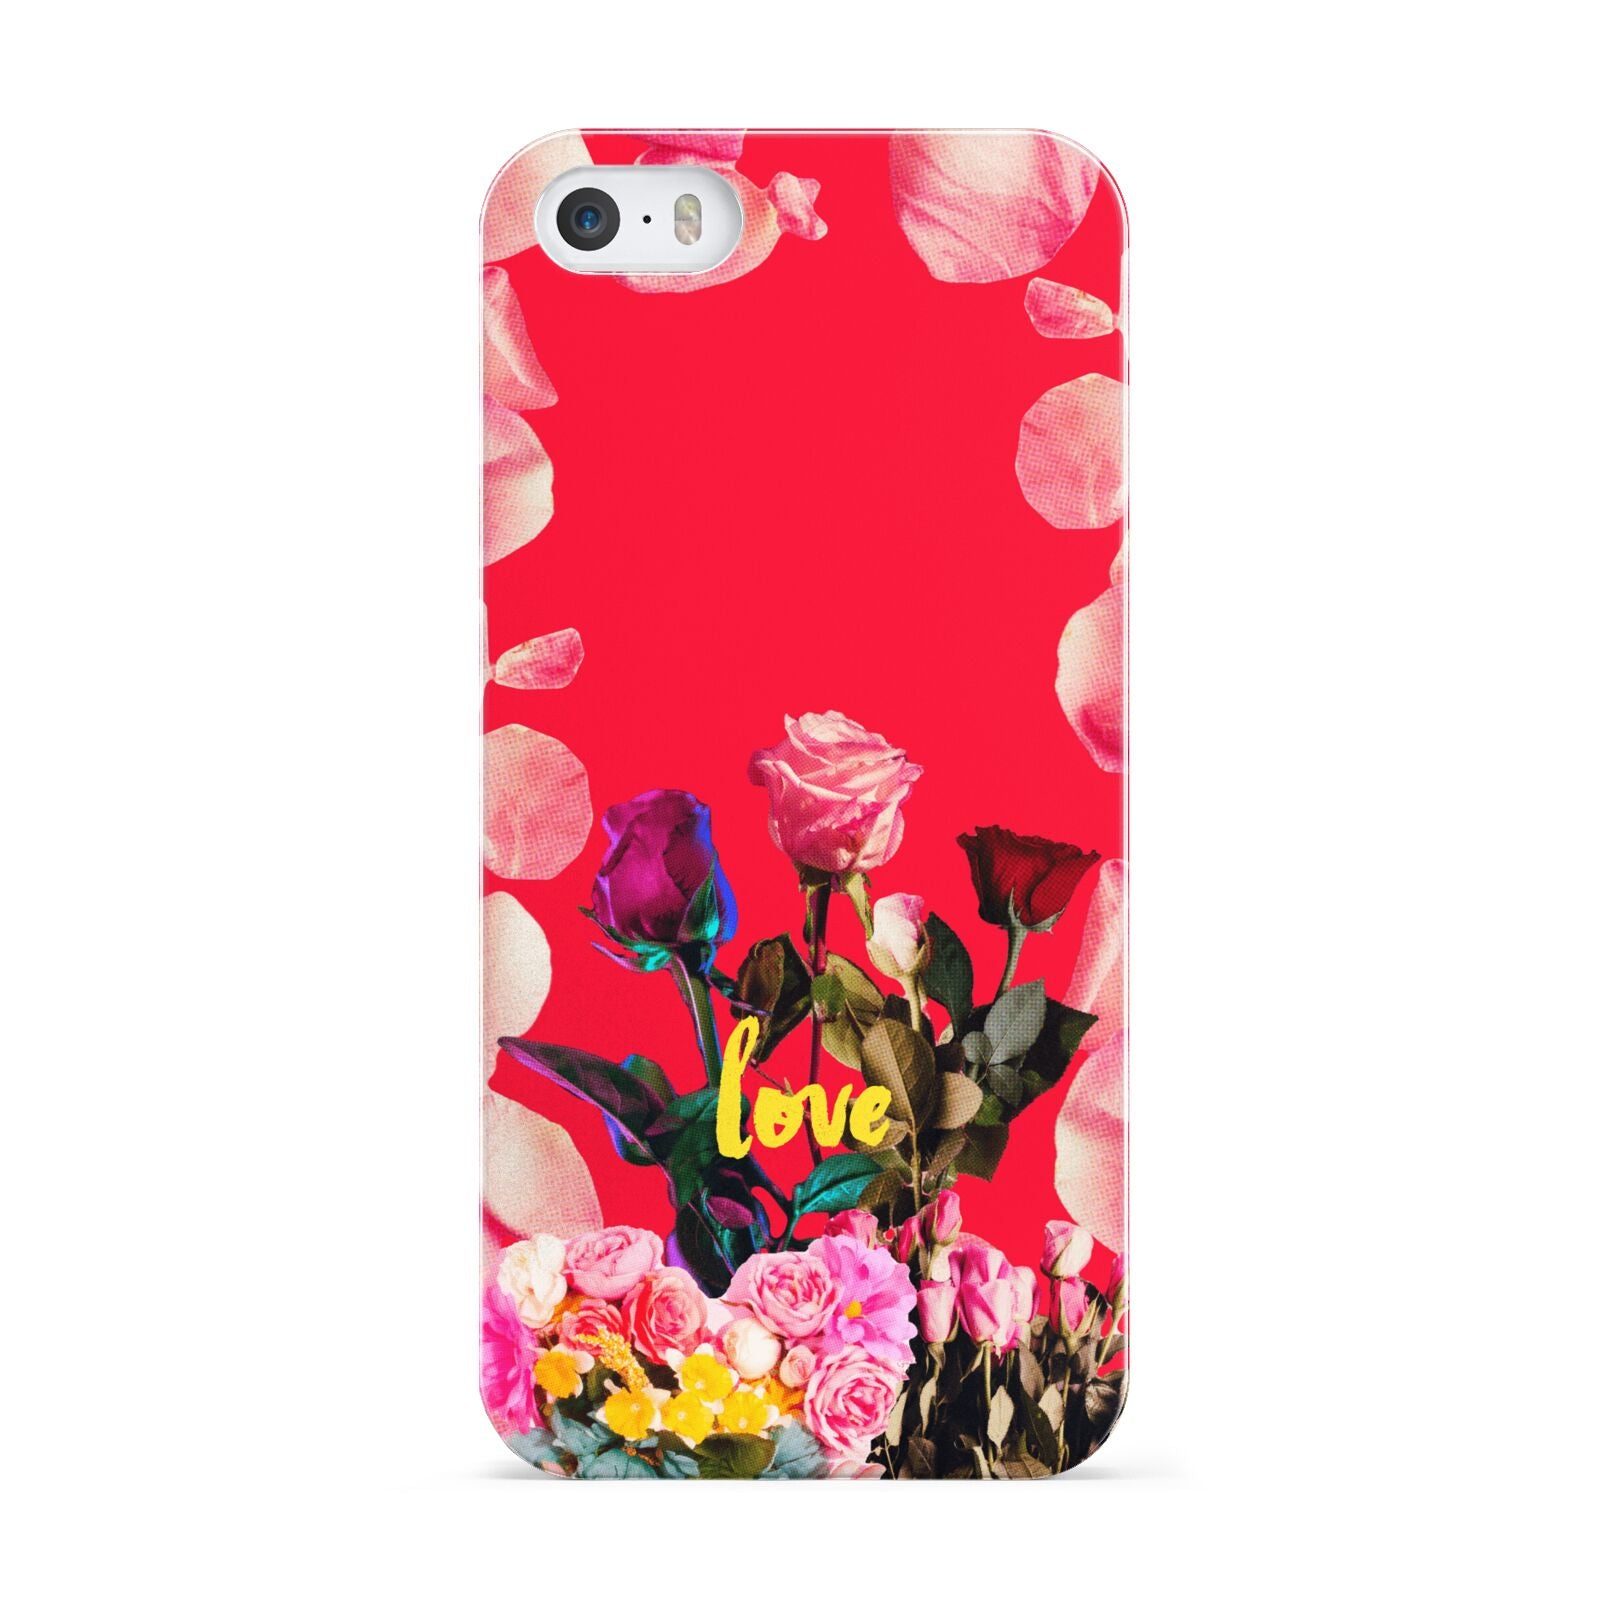 Retro Floral Valentine Apple iPhone 5 Case